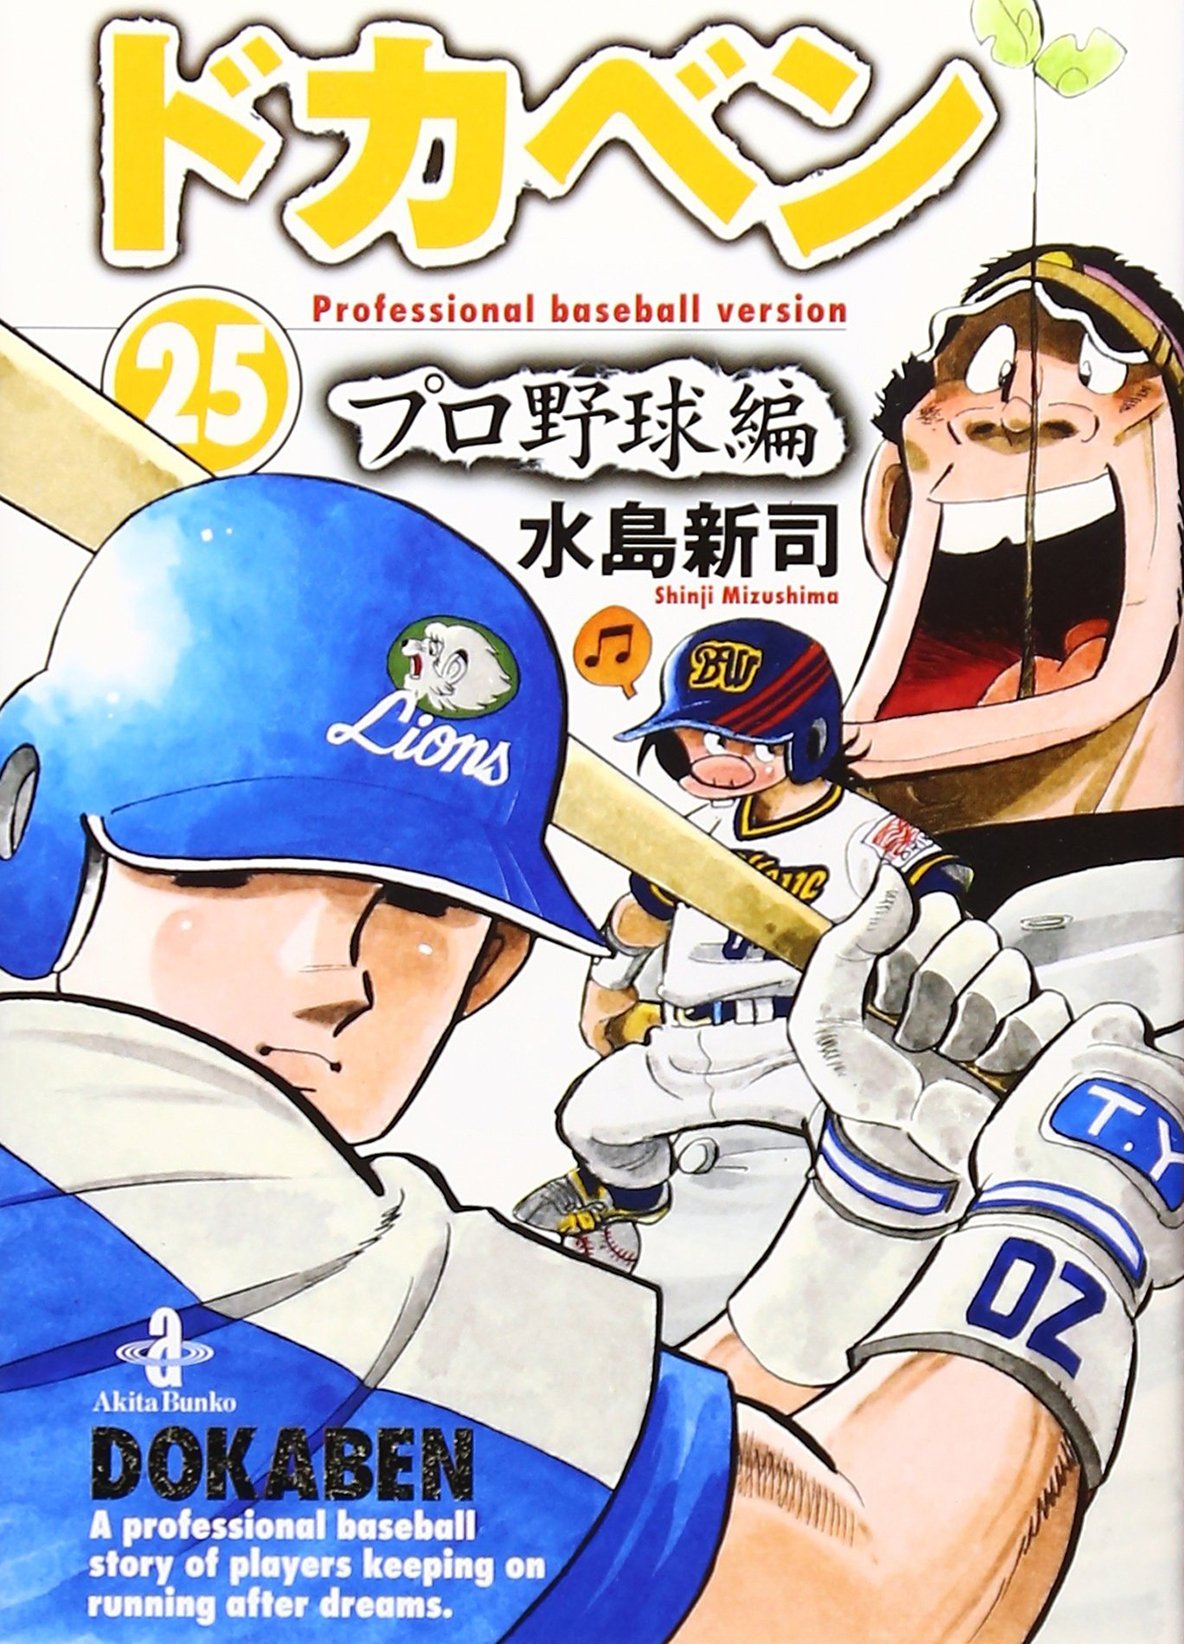 ドカベン 山田 が圧倒的 野球漫画の 史上最強のスラッガー ランキング ふたまん